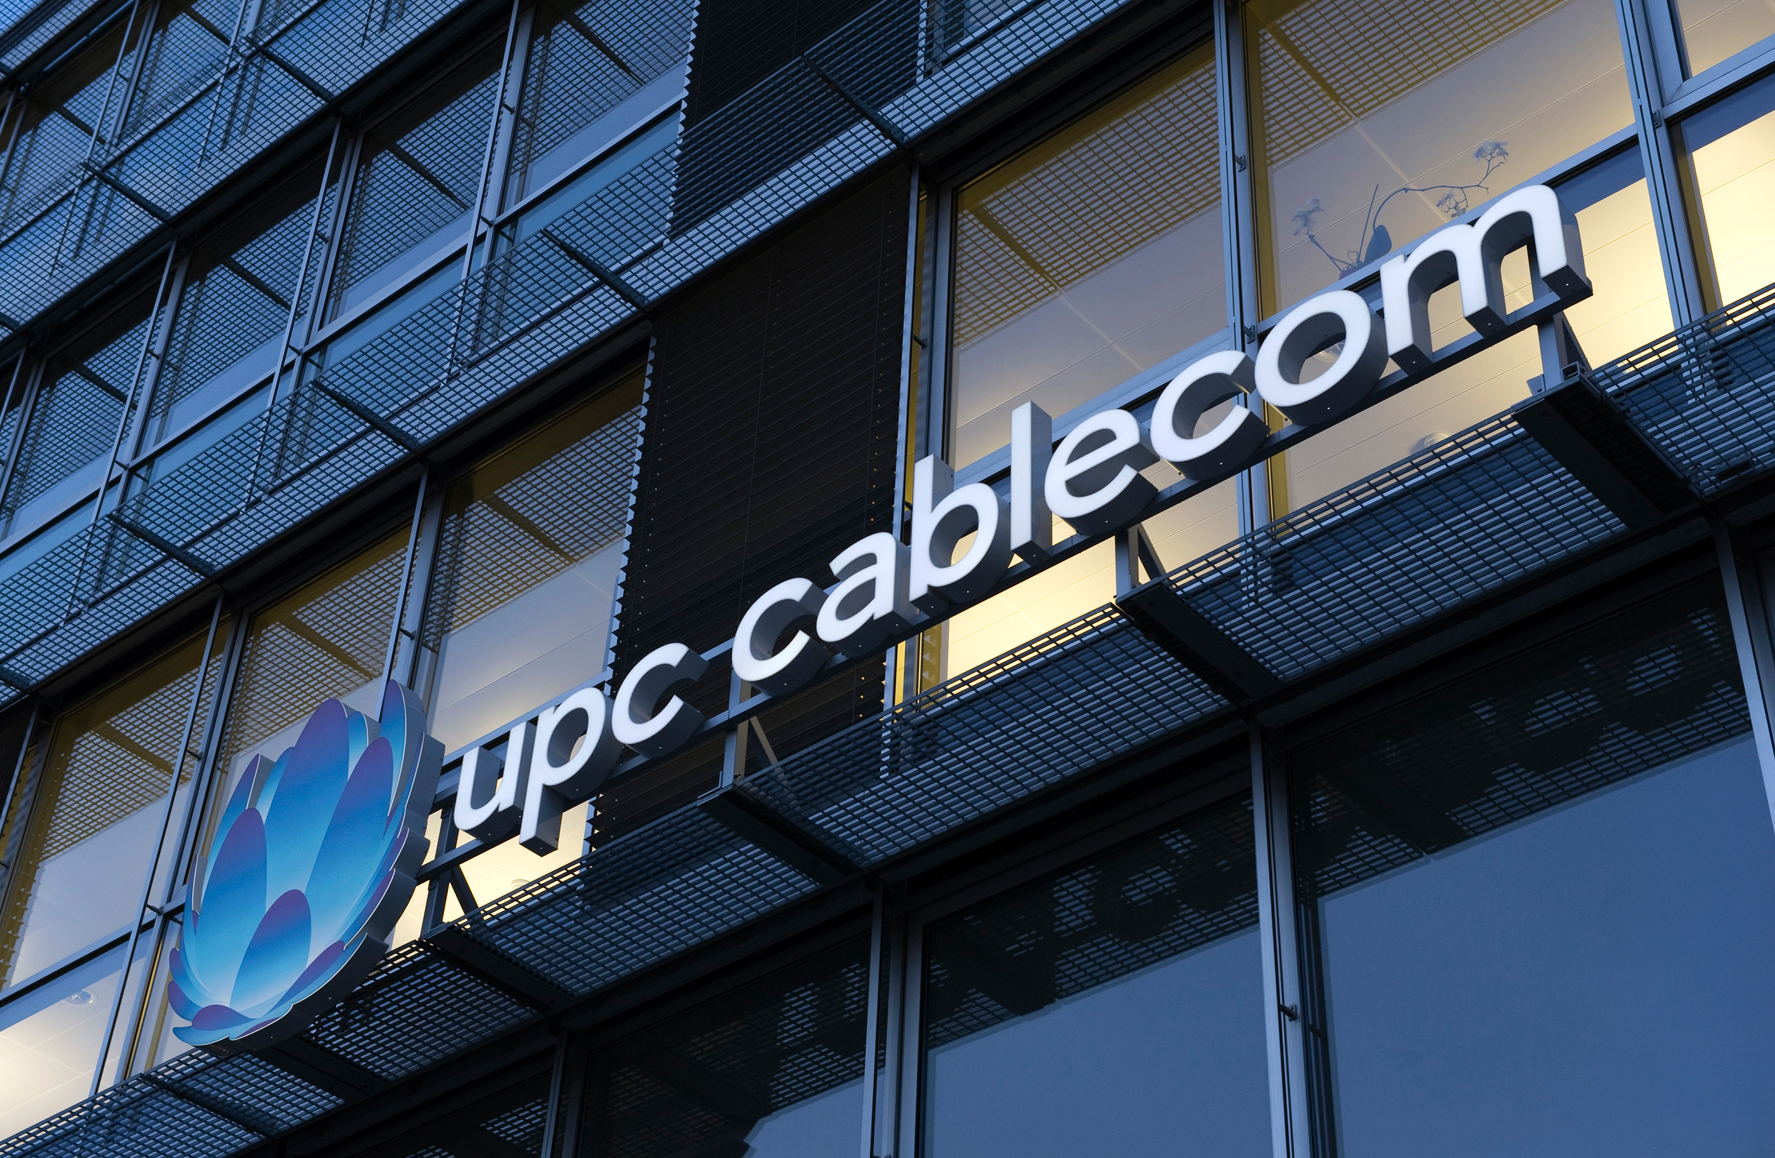 Mehr UPC-Cablecom-Kunden bei Internet, Telefonie und Mobile